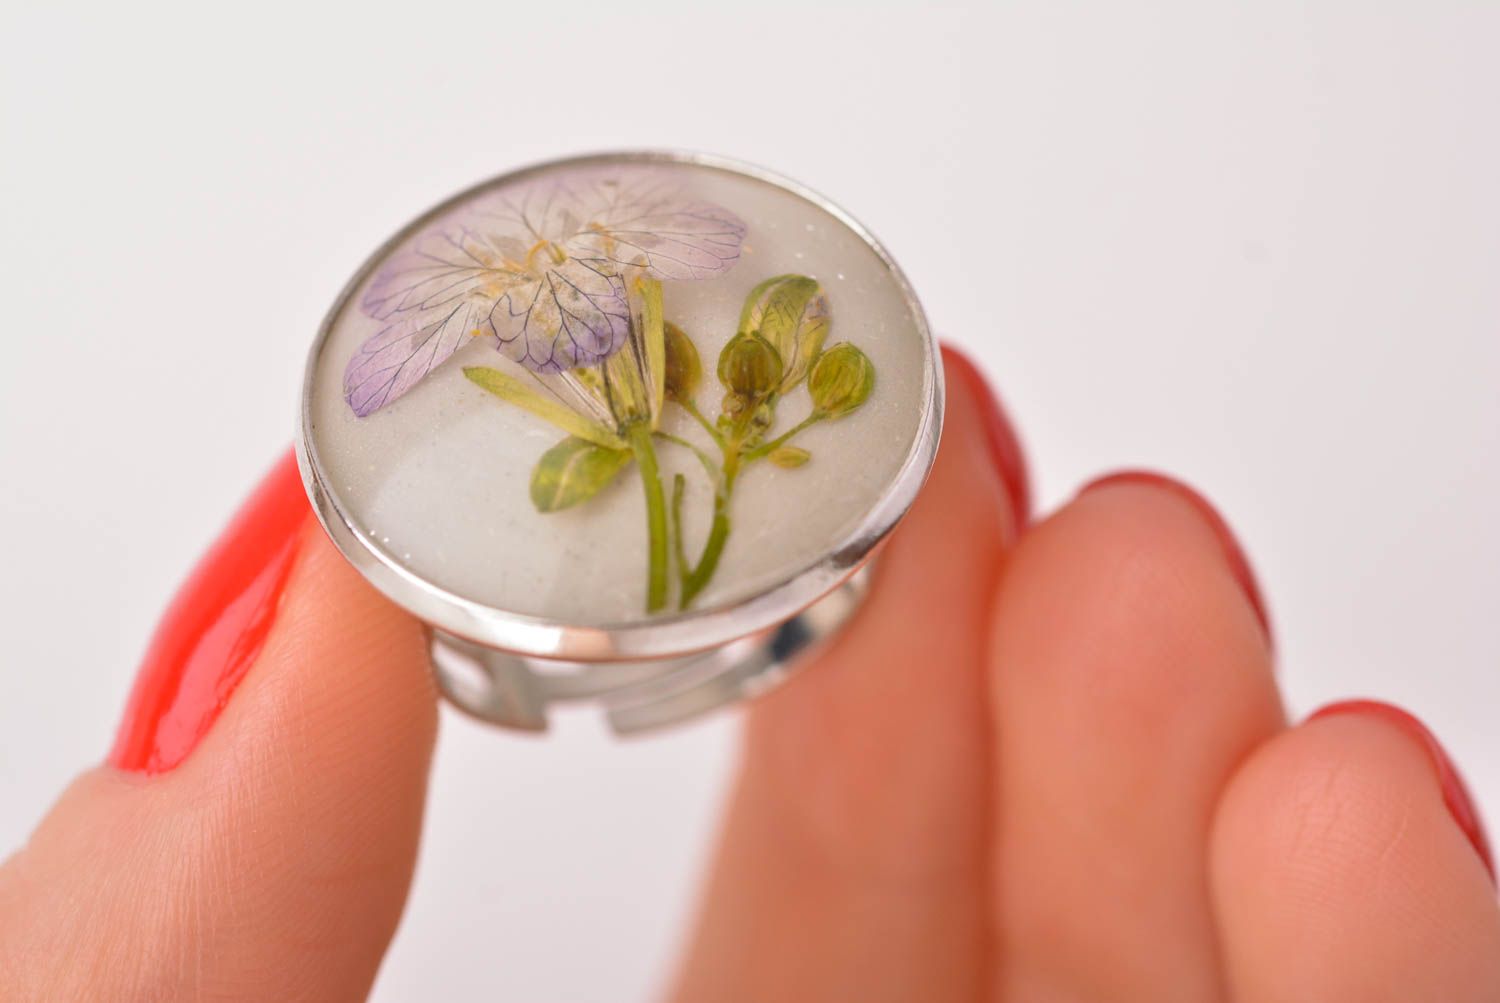 Кольцо ручной работы кольцо из эпоксидной смолы женское кольцо с редиской фото 5